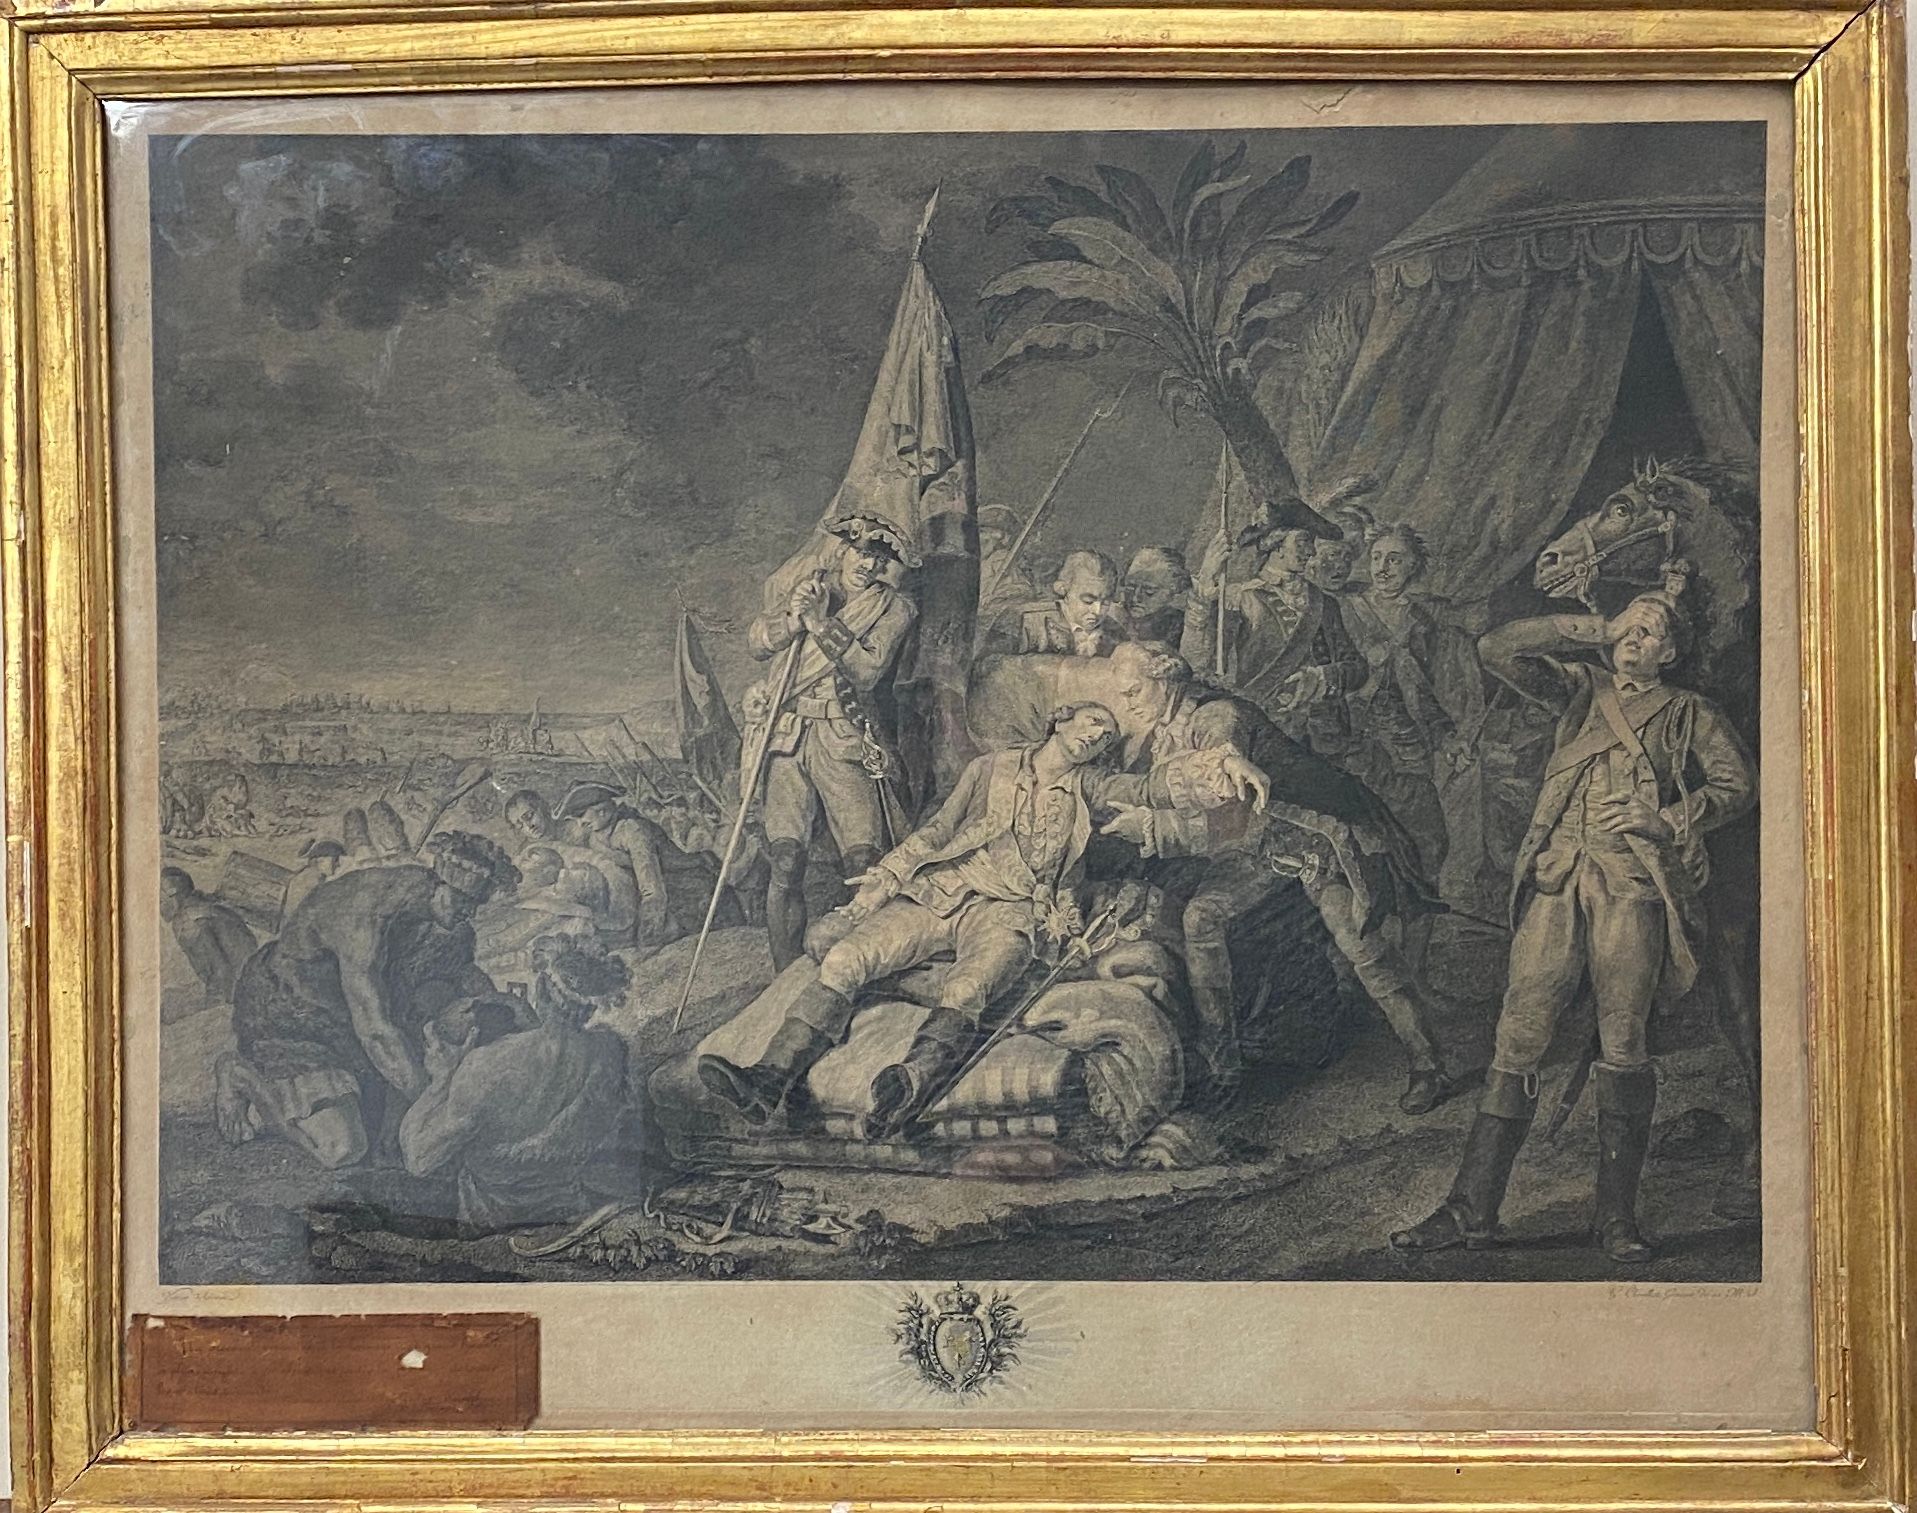 Null 在Juste CHEVILLET（1729-1802）之后

1759年9月13日，蒙卡姆侯爵在魁北克战役中死亡。

根据弗朗索瓦-华托1782年的画&hellip;